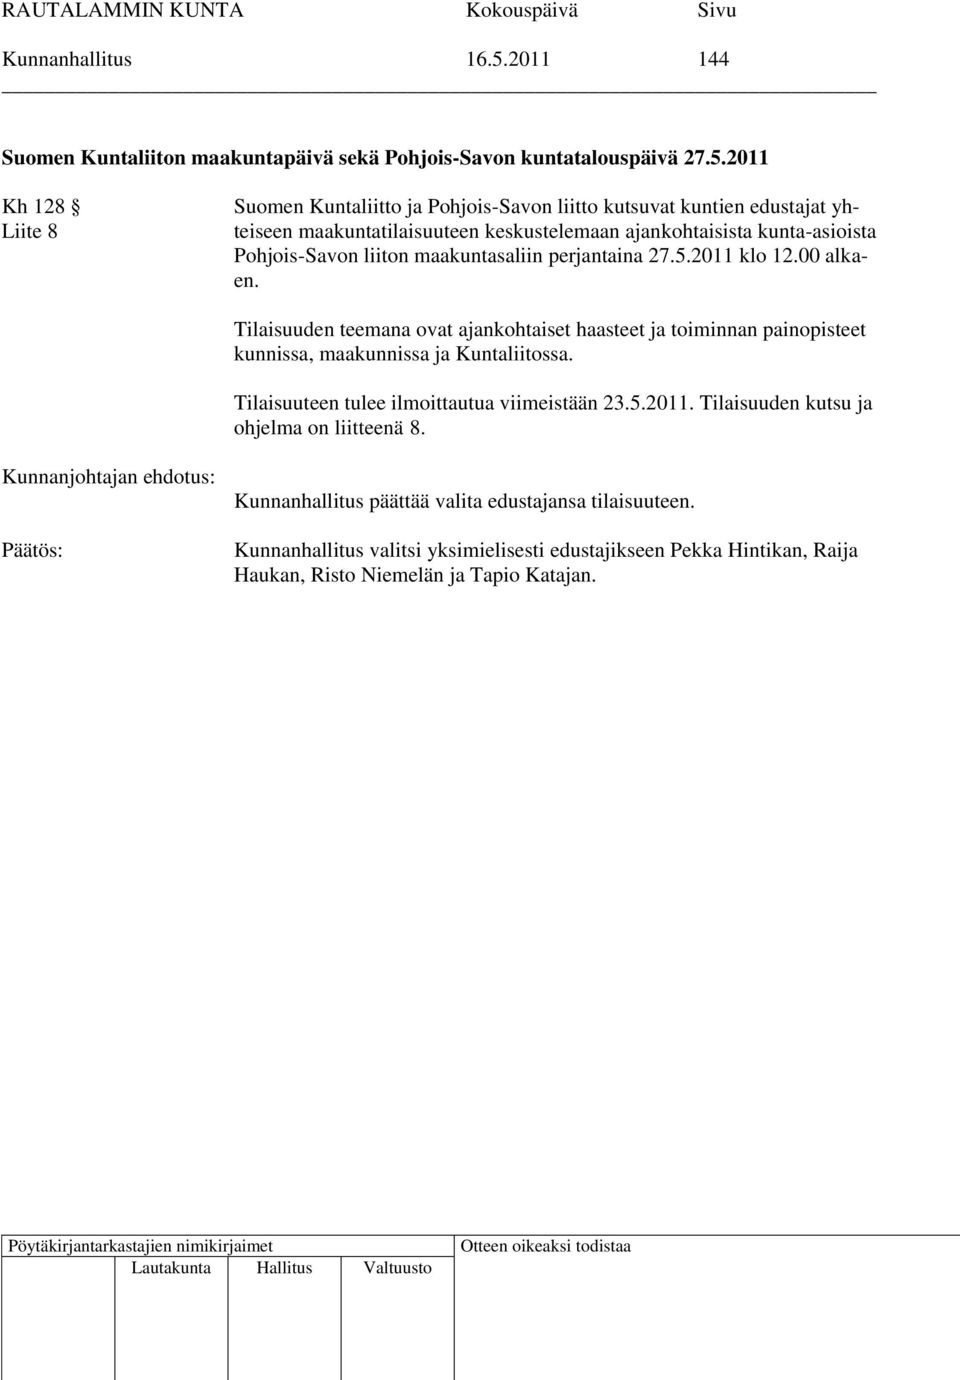 2011 Kh 128 Liite 8 Suomen Kuntaliitto ja Pohjois-Savon liitto kutsuvat kuntien edustajat yhteiseen maakuntatilaisuuteen keskustelemaan ajankohtaisista kunta-asioista Pohjois-Savon